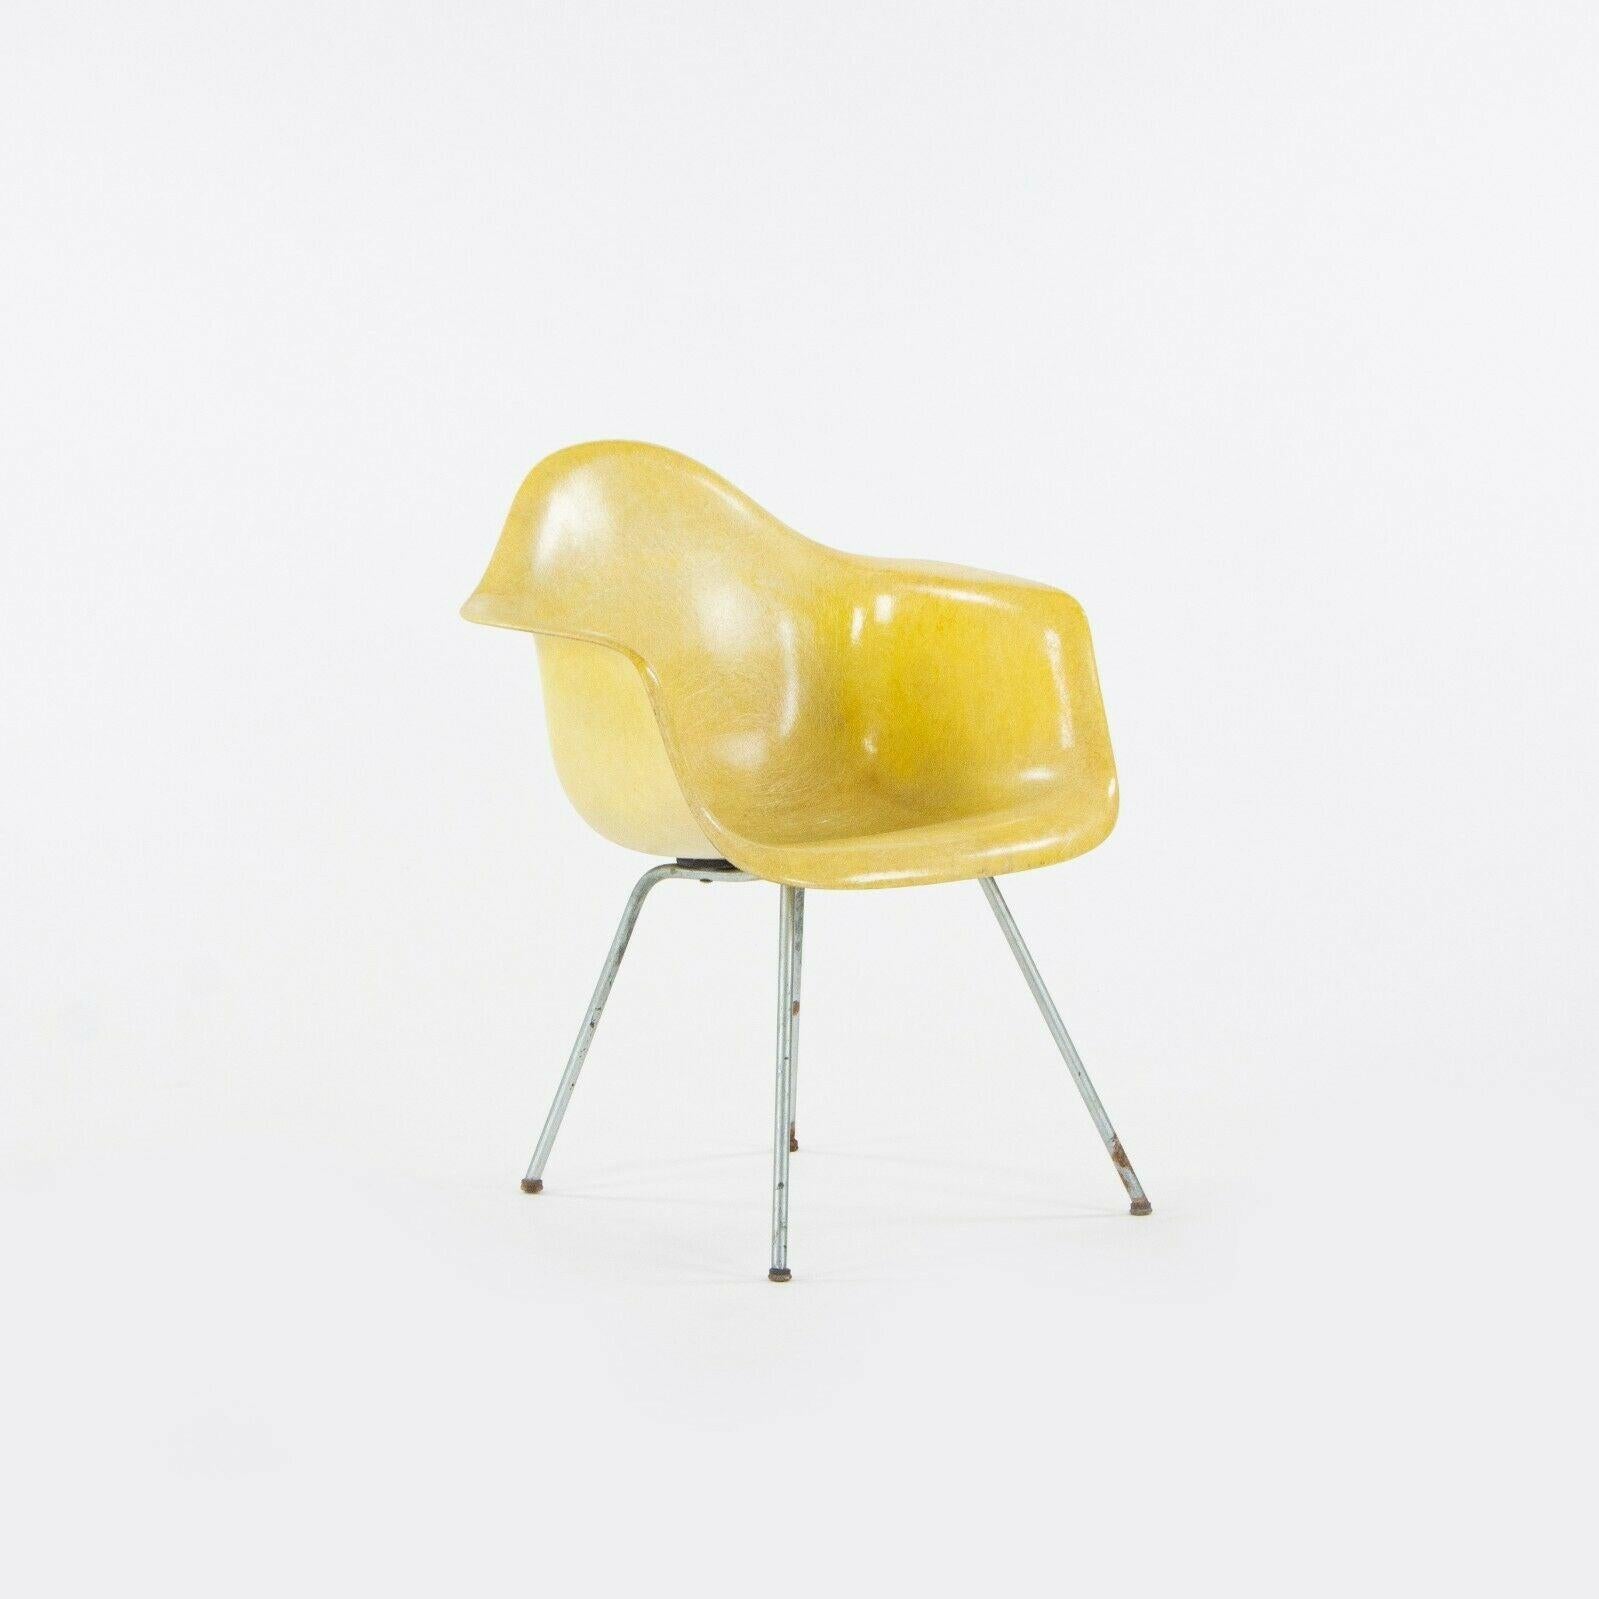 Zum Verkauf steht ein super seltener und originaler Satz von vier zitronengelben Herman Miller Eames Fiberglas Ess- und Beistellstühlen, entworfen von Ray und Charles Eames. Diese Stühle sind die SAX-Standardstühle, die etwas niedriger als der DAX